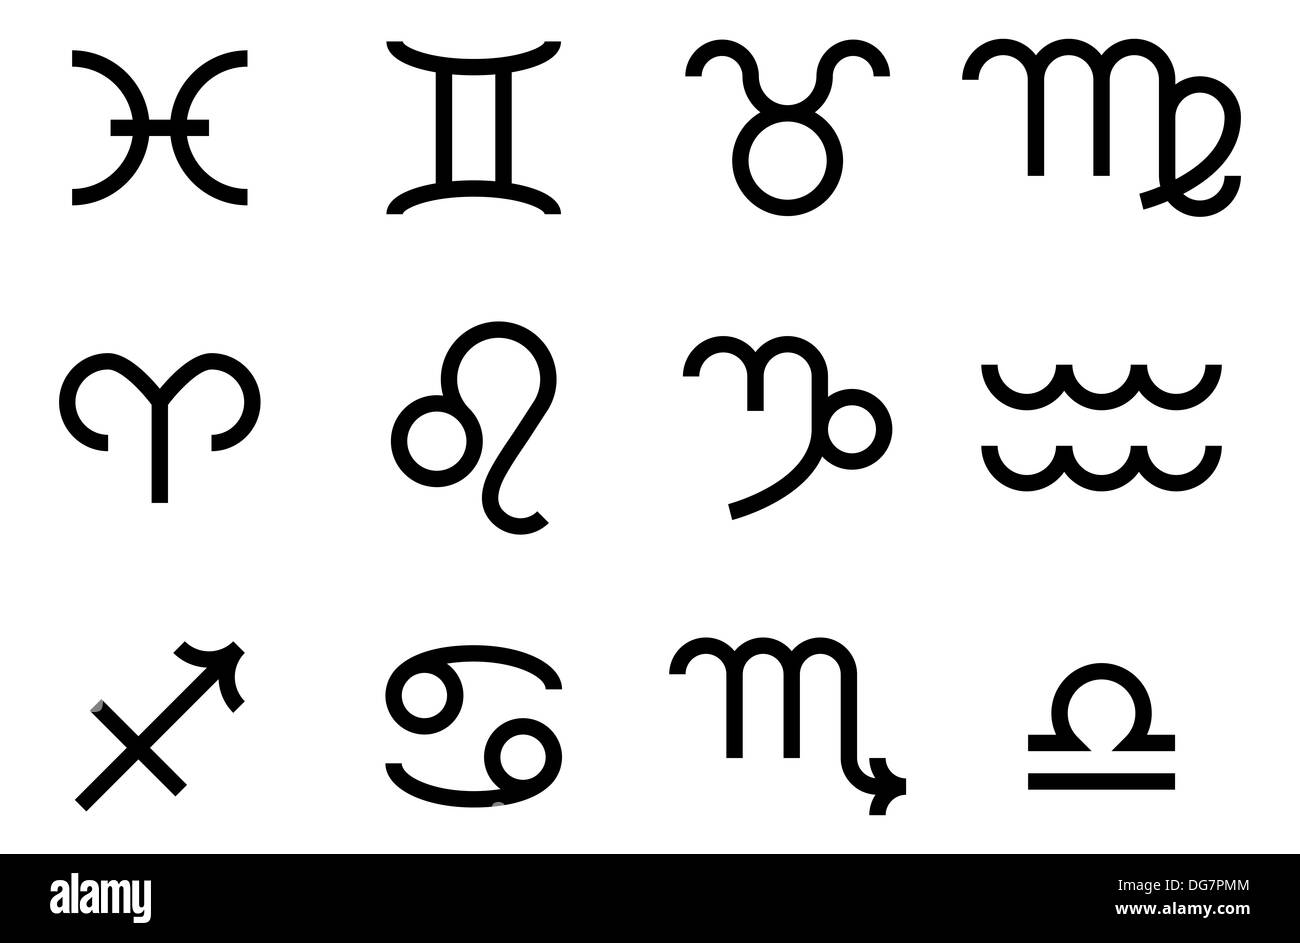 Un set di segno zodiacale le icone che rappresentano i dodici segni zodiacali per oroscopi e simili Foto Stock